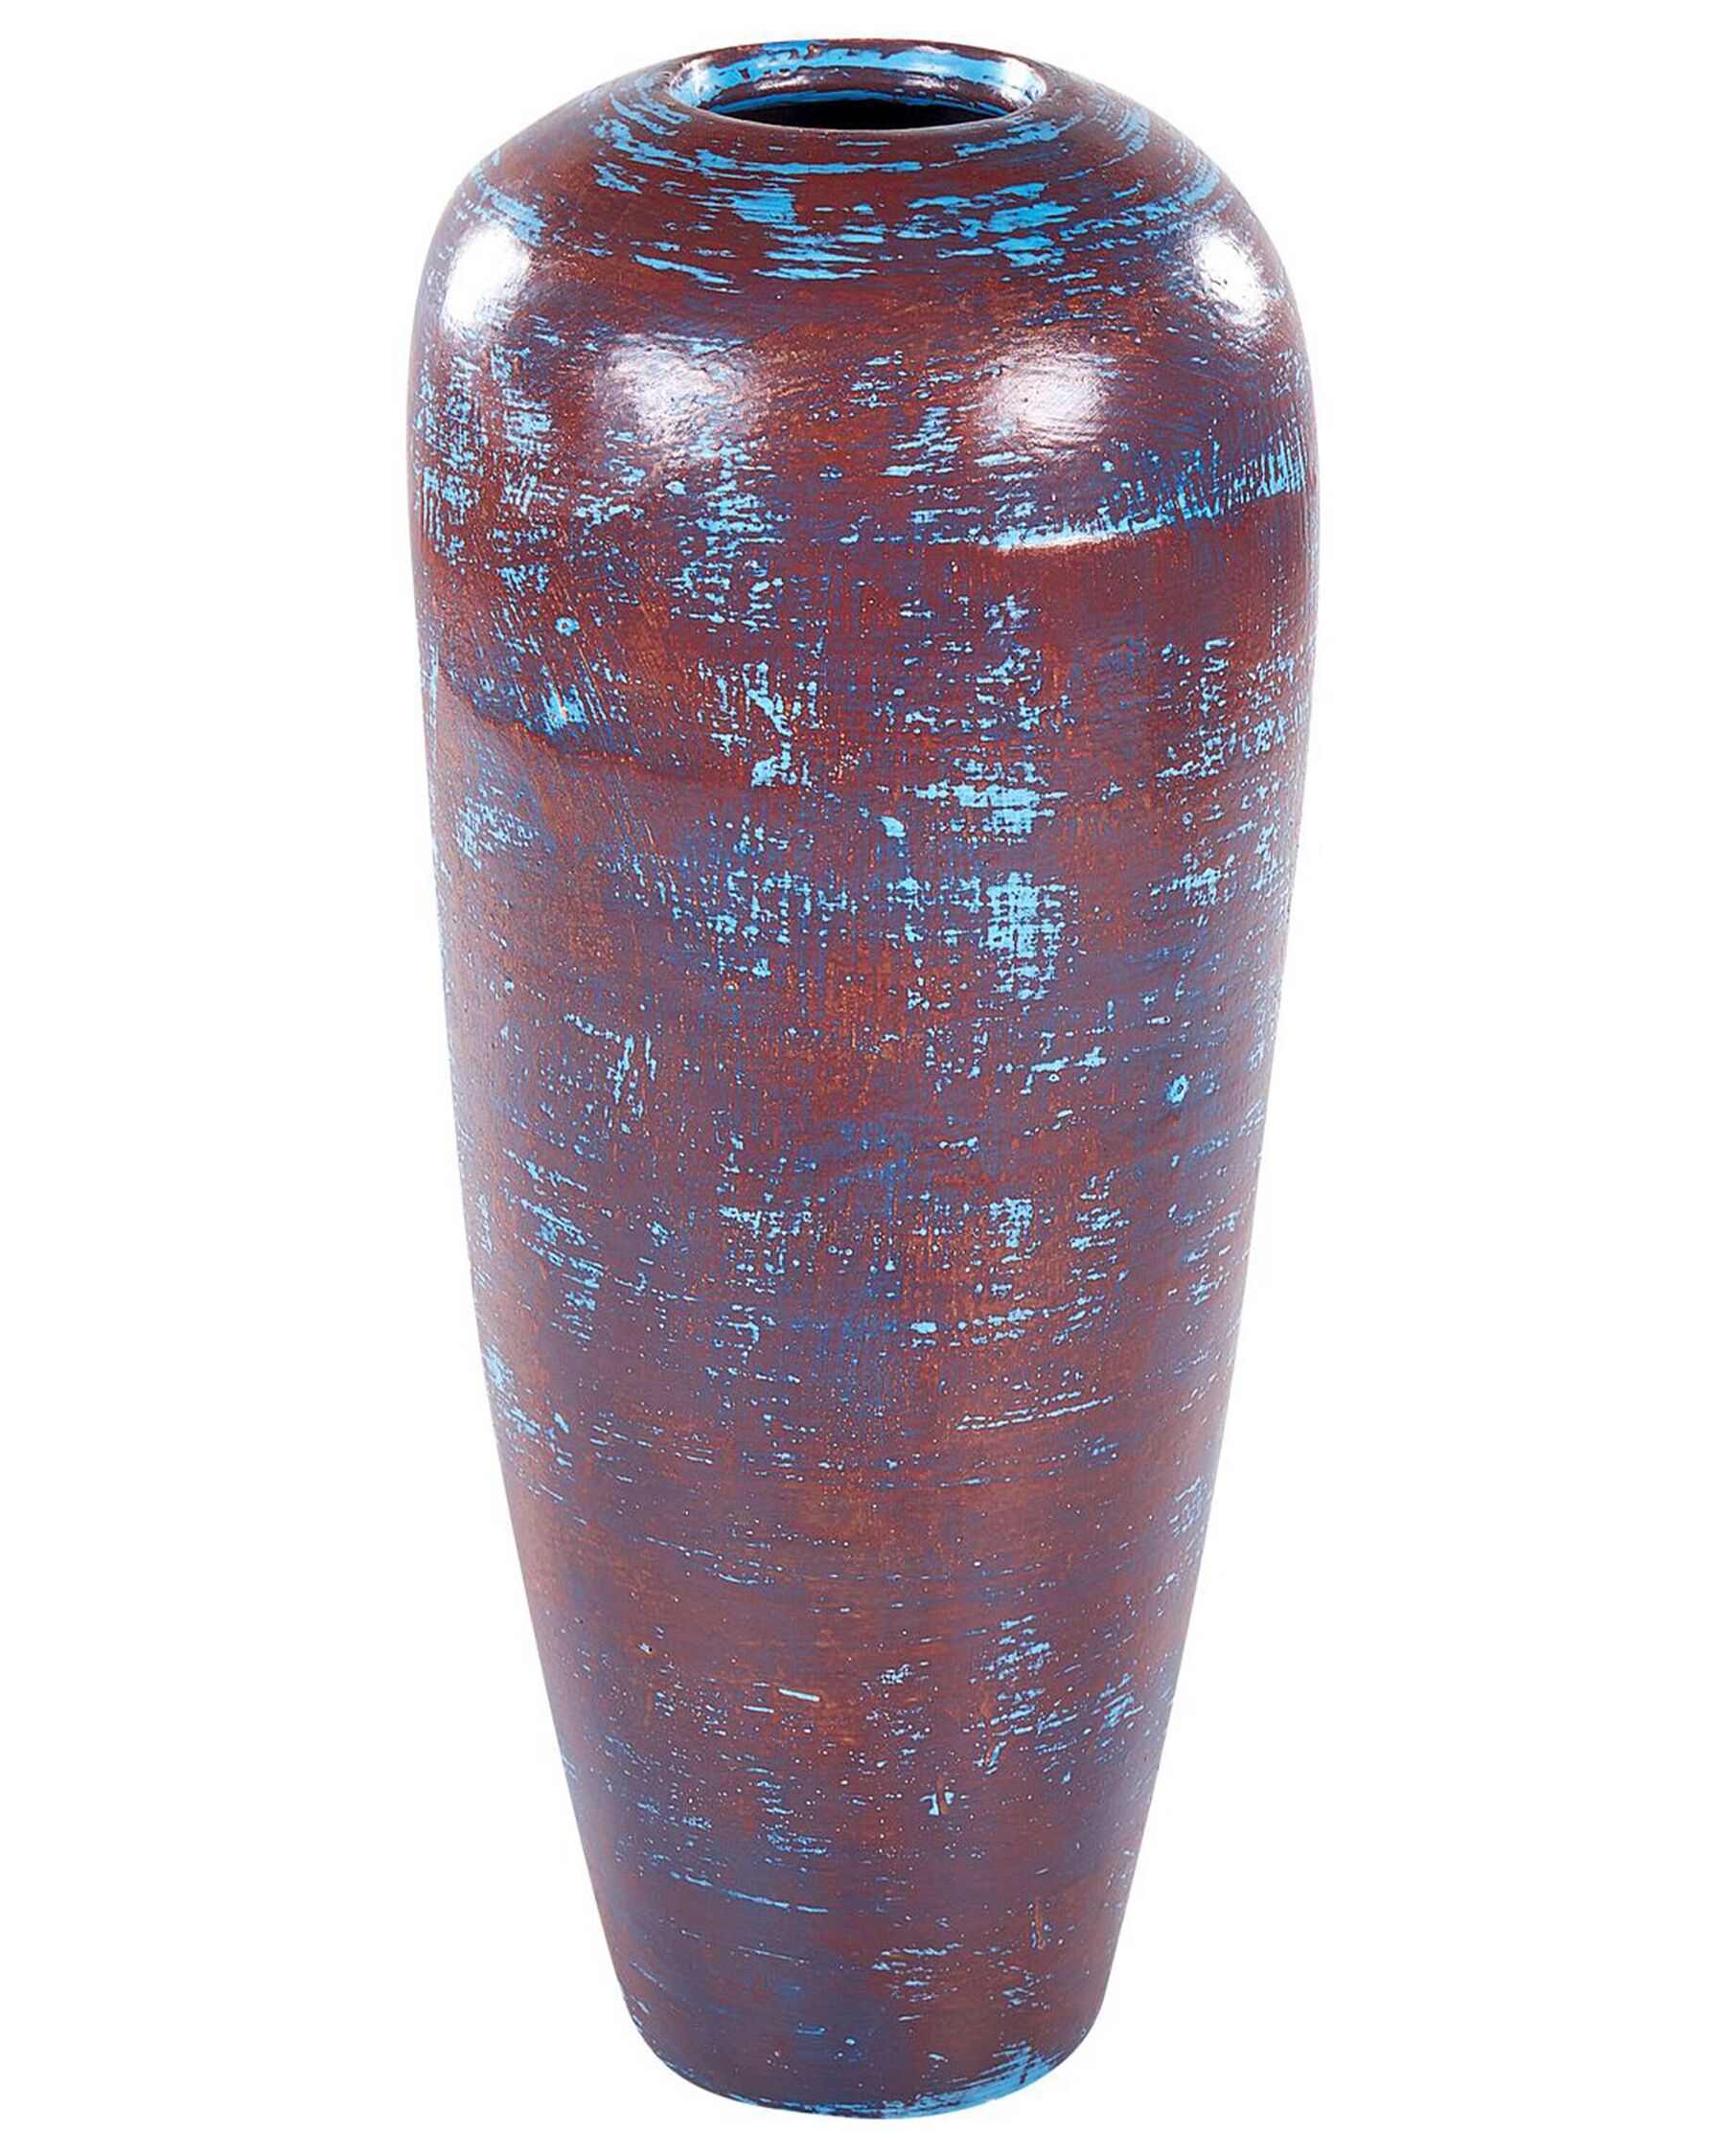 Koristemaljakko terrakotta ruskea/sininen 59 cm DOJRAN_850613